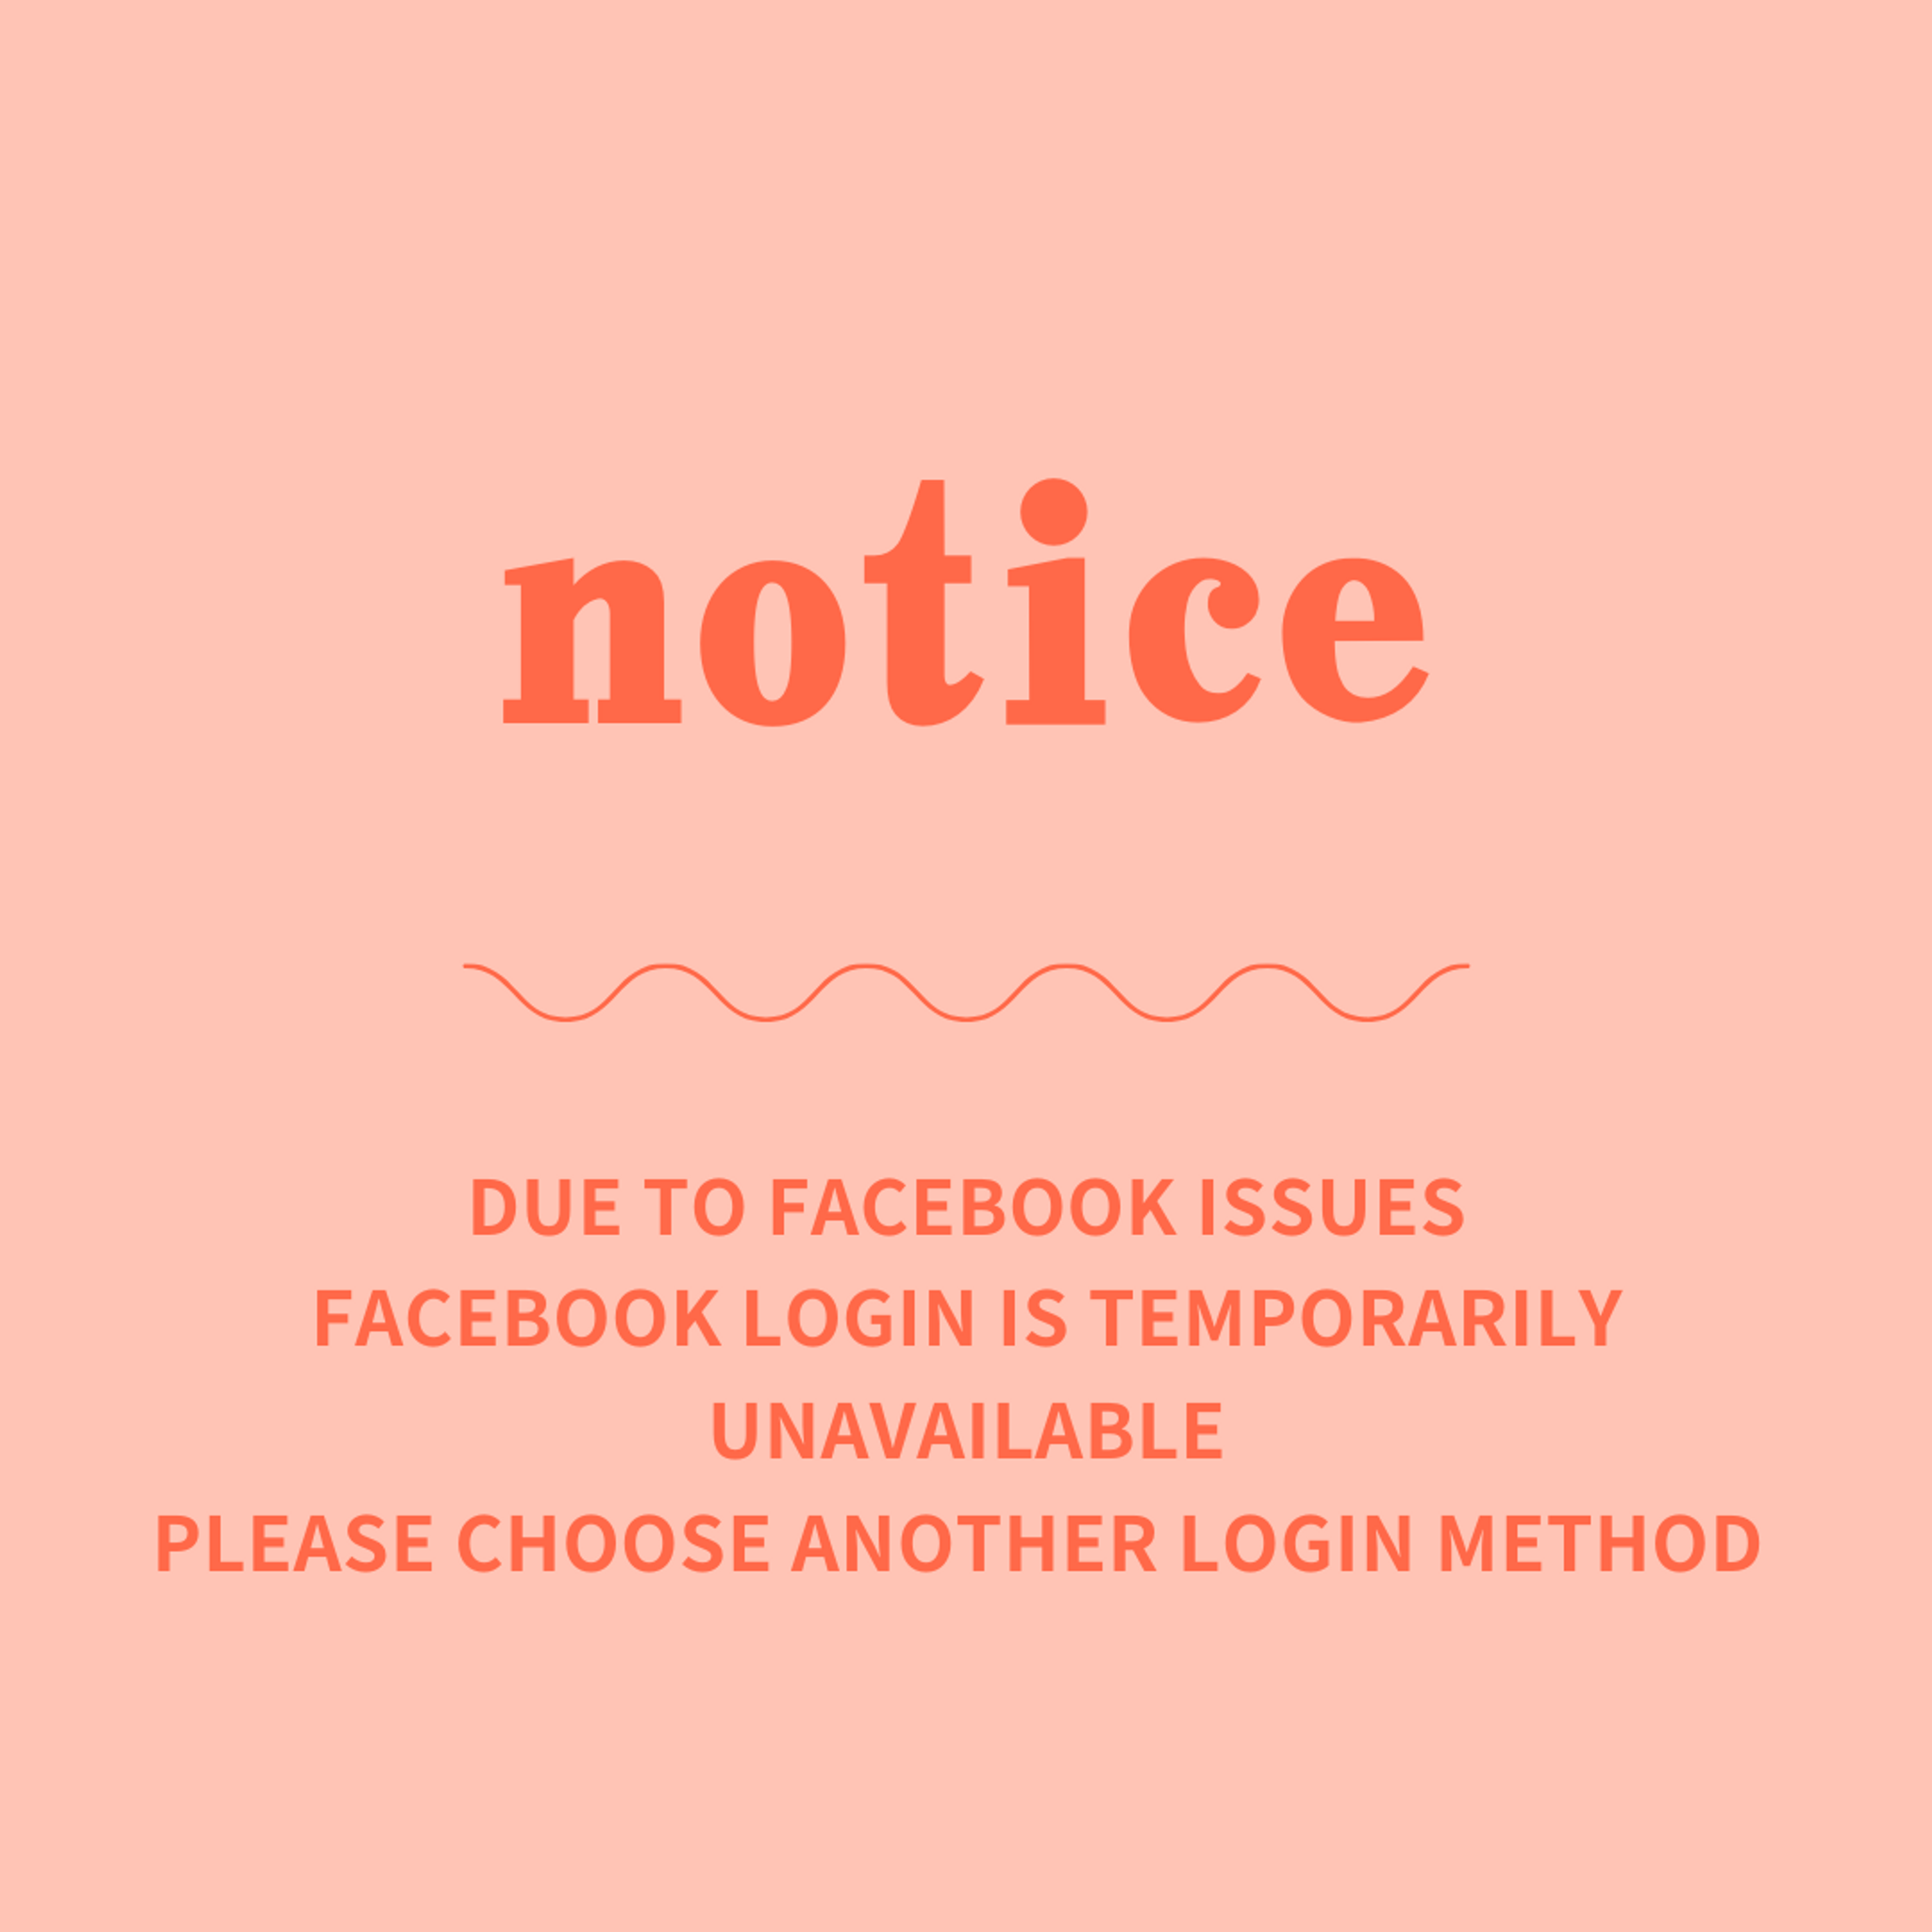 Facebook Login Issue Notice